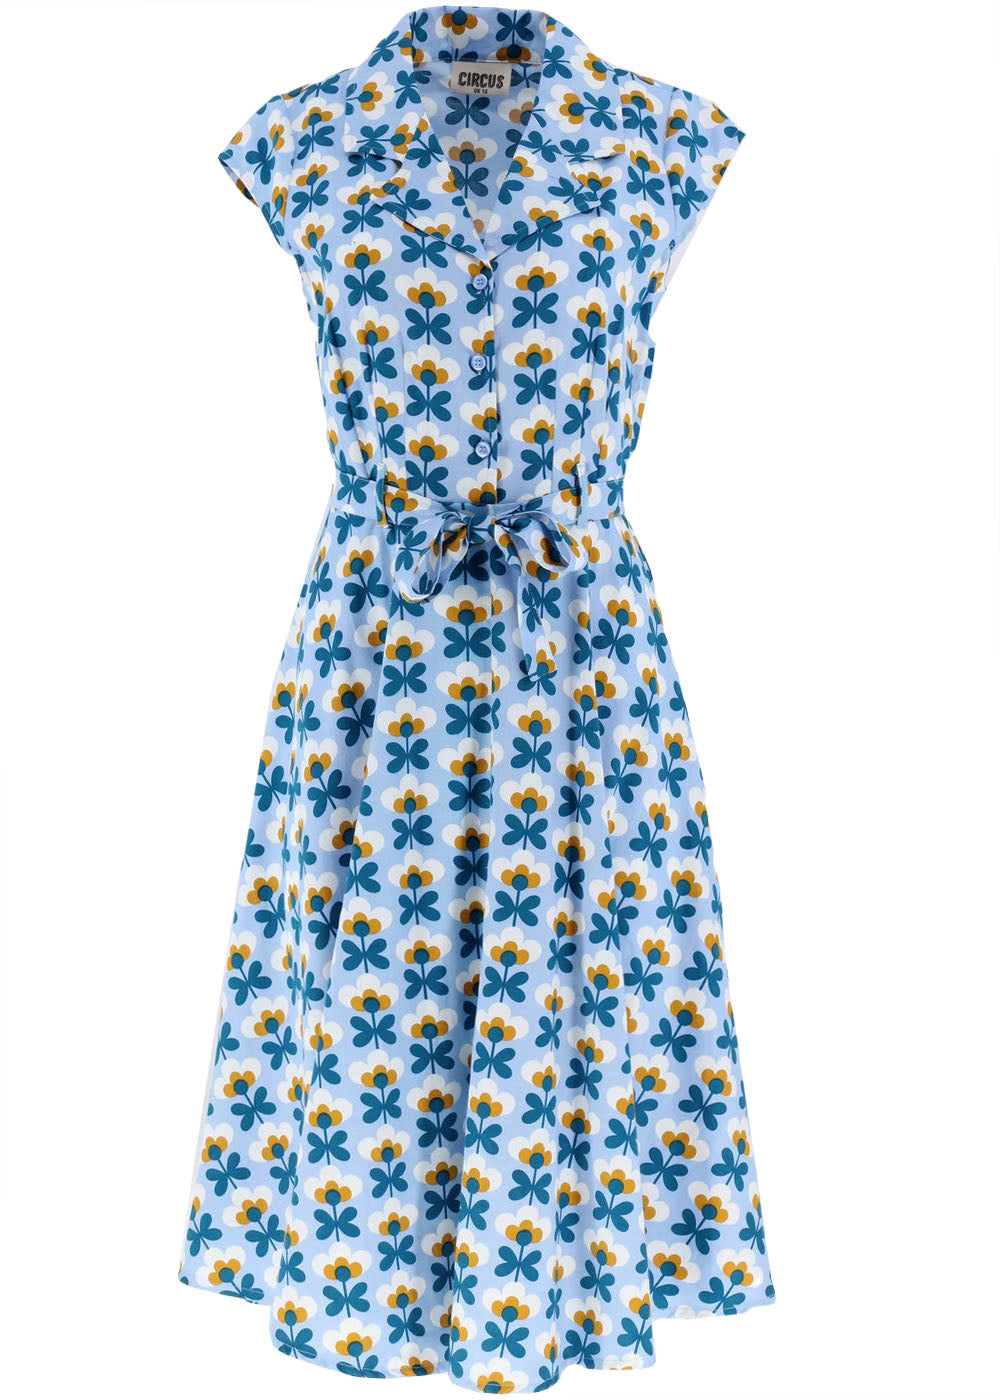 Helsinki - 50er Jahre Kleid - hellblau